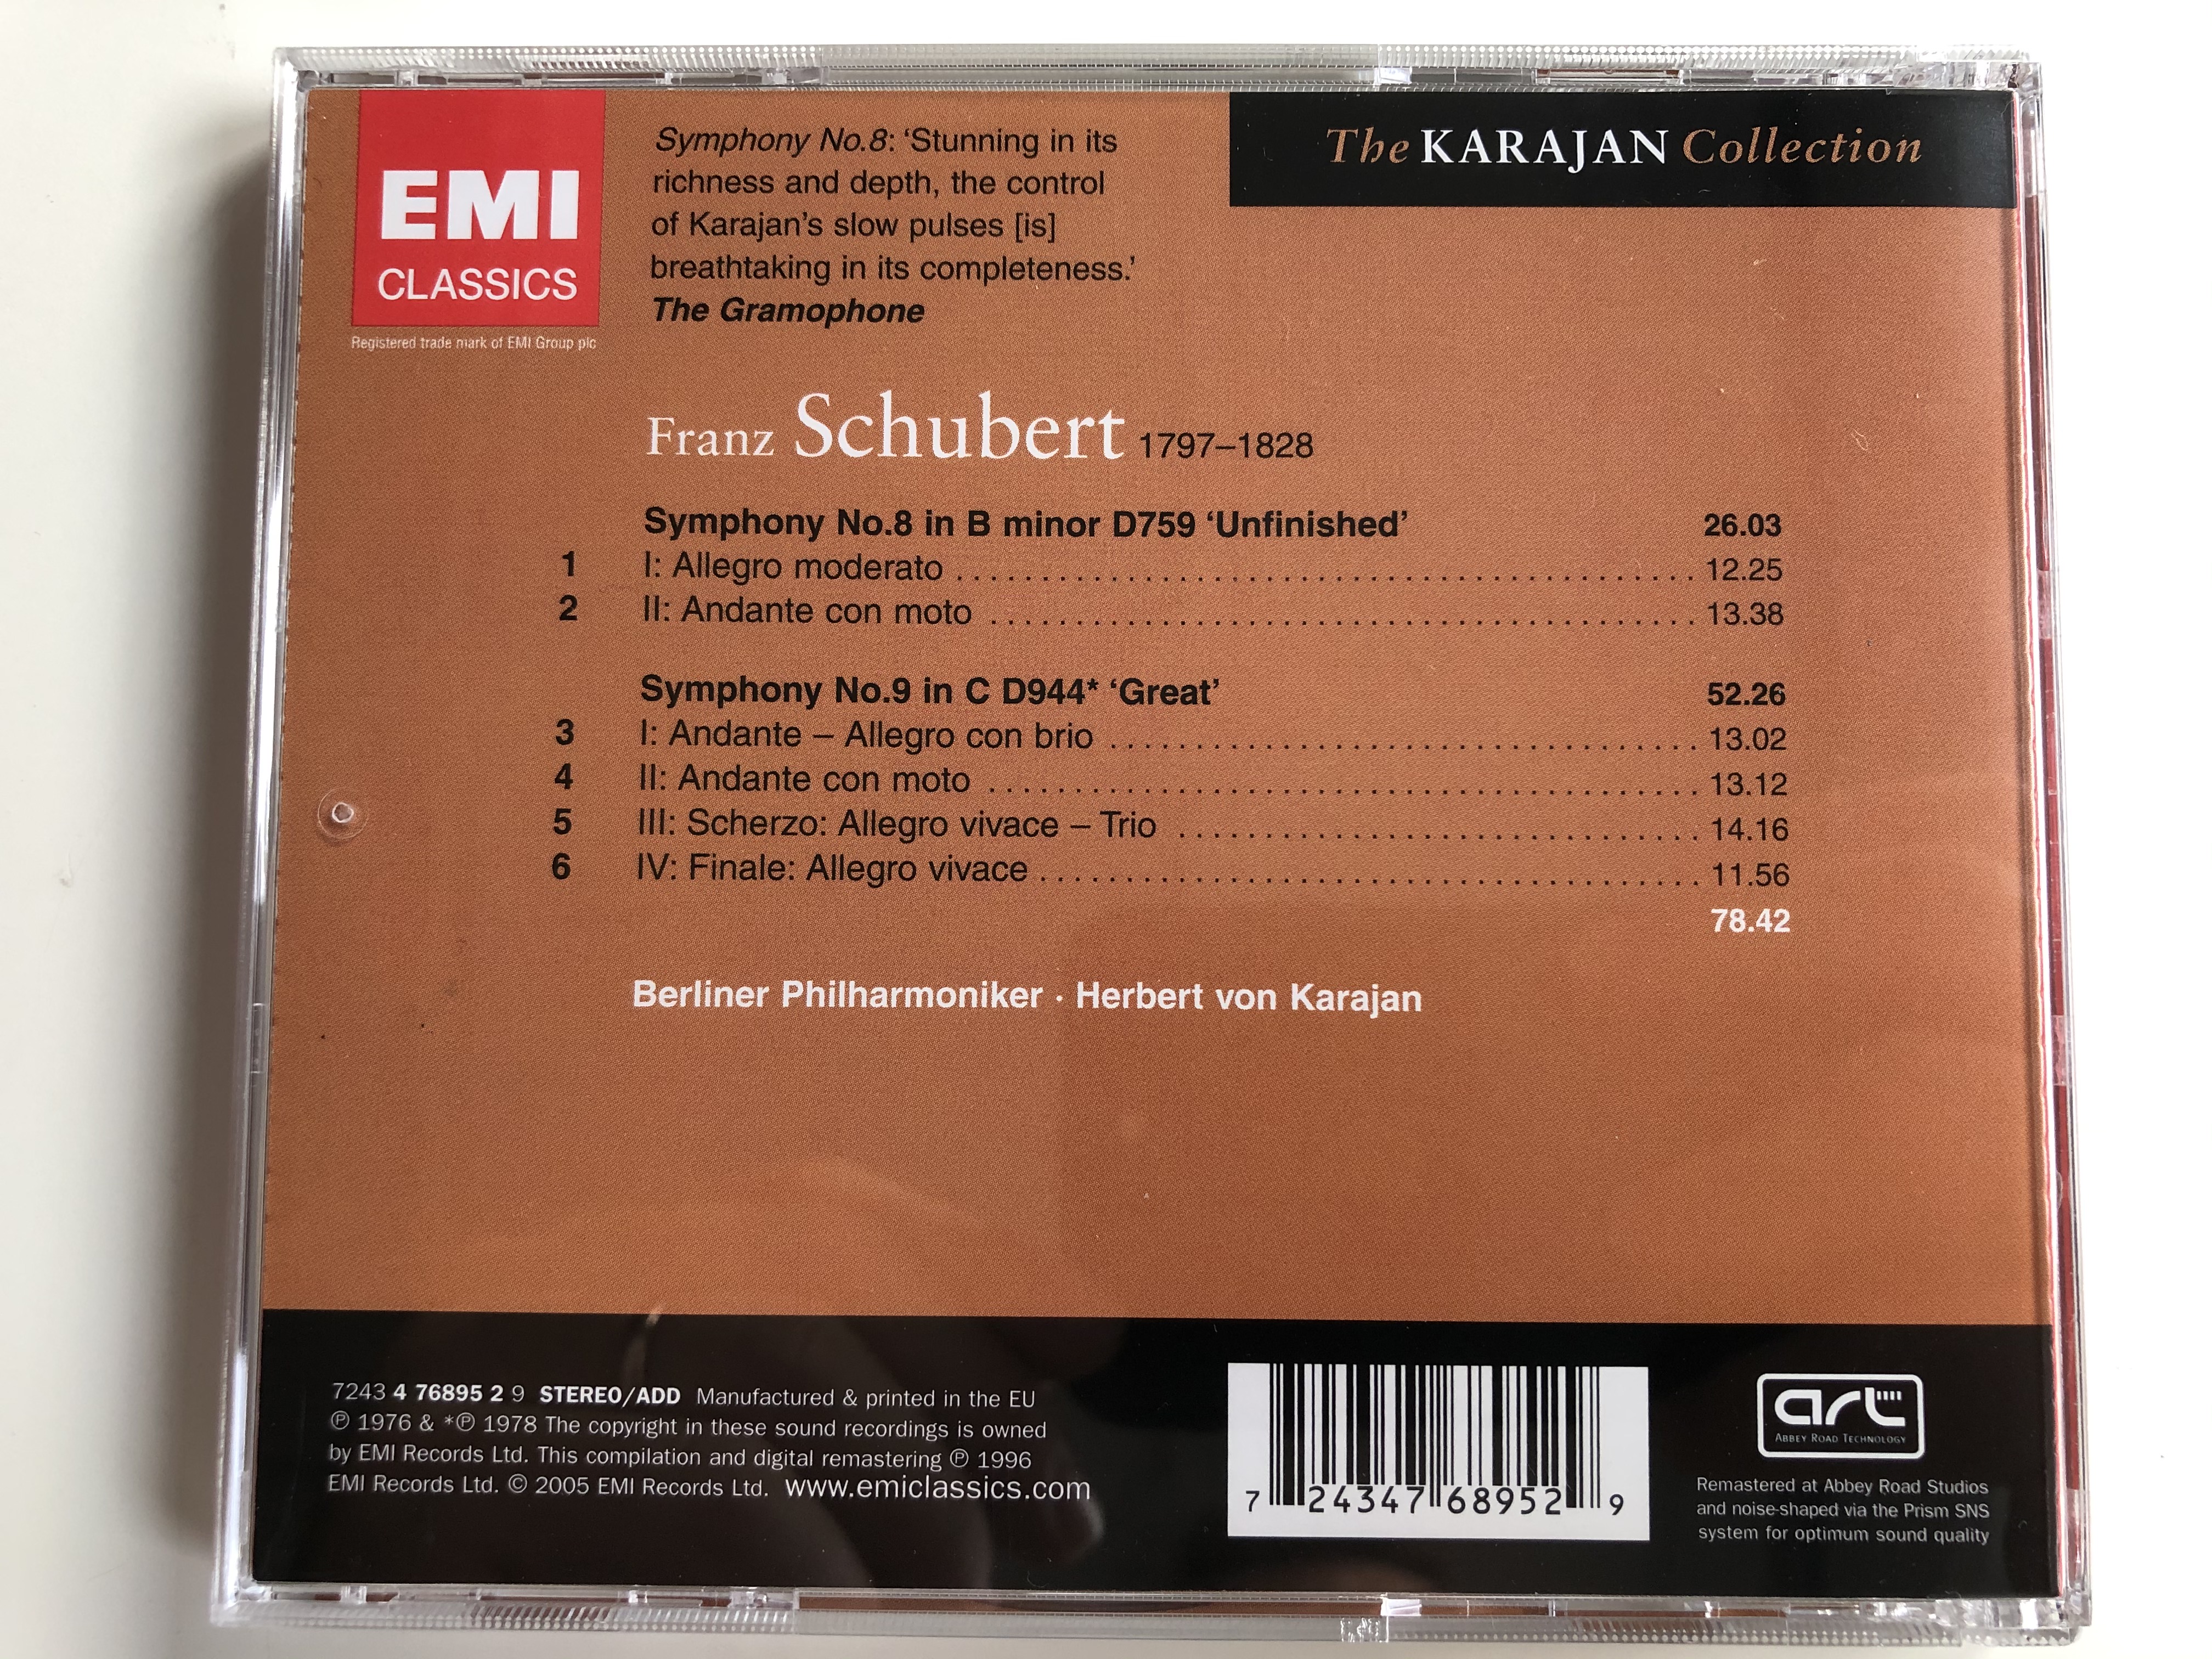 the-karajan-collection-schubert-symphonies-8-9-berliner-philharmoniker-herbert-von-karajan-emi-classics-audio-cd-stereo-7243-4-76895-2-9-7-.jpg